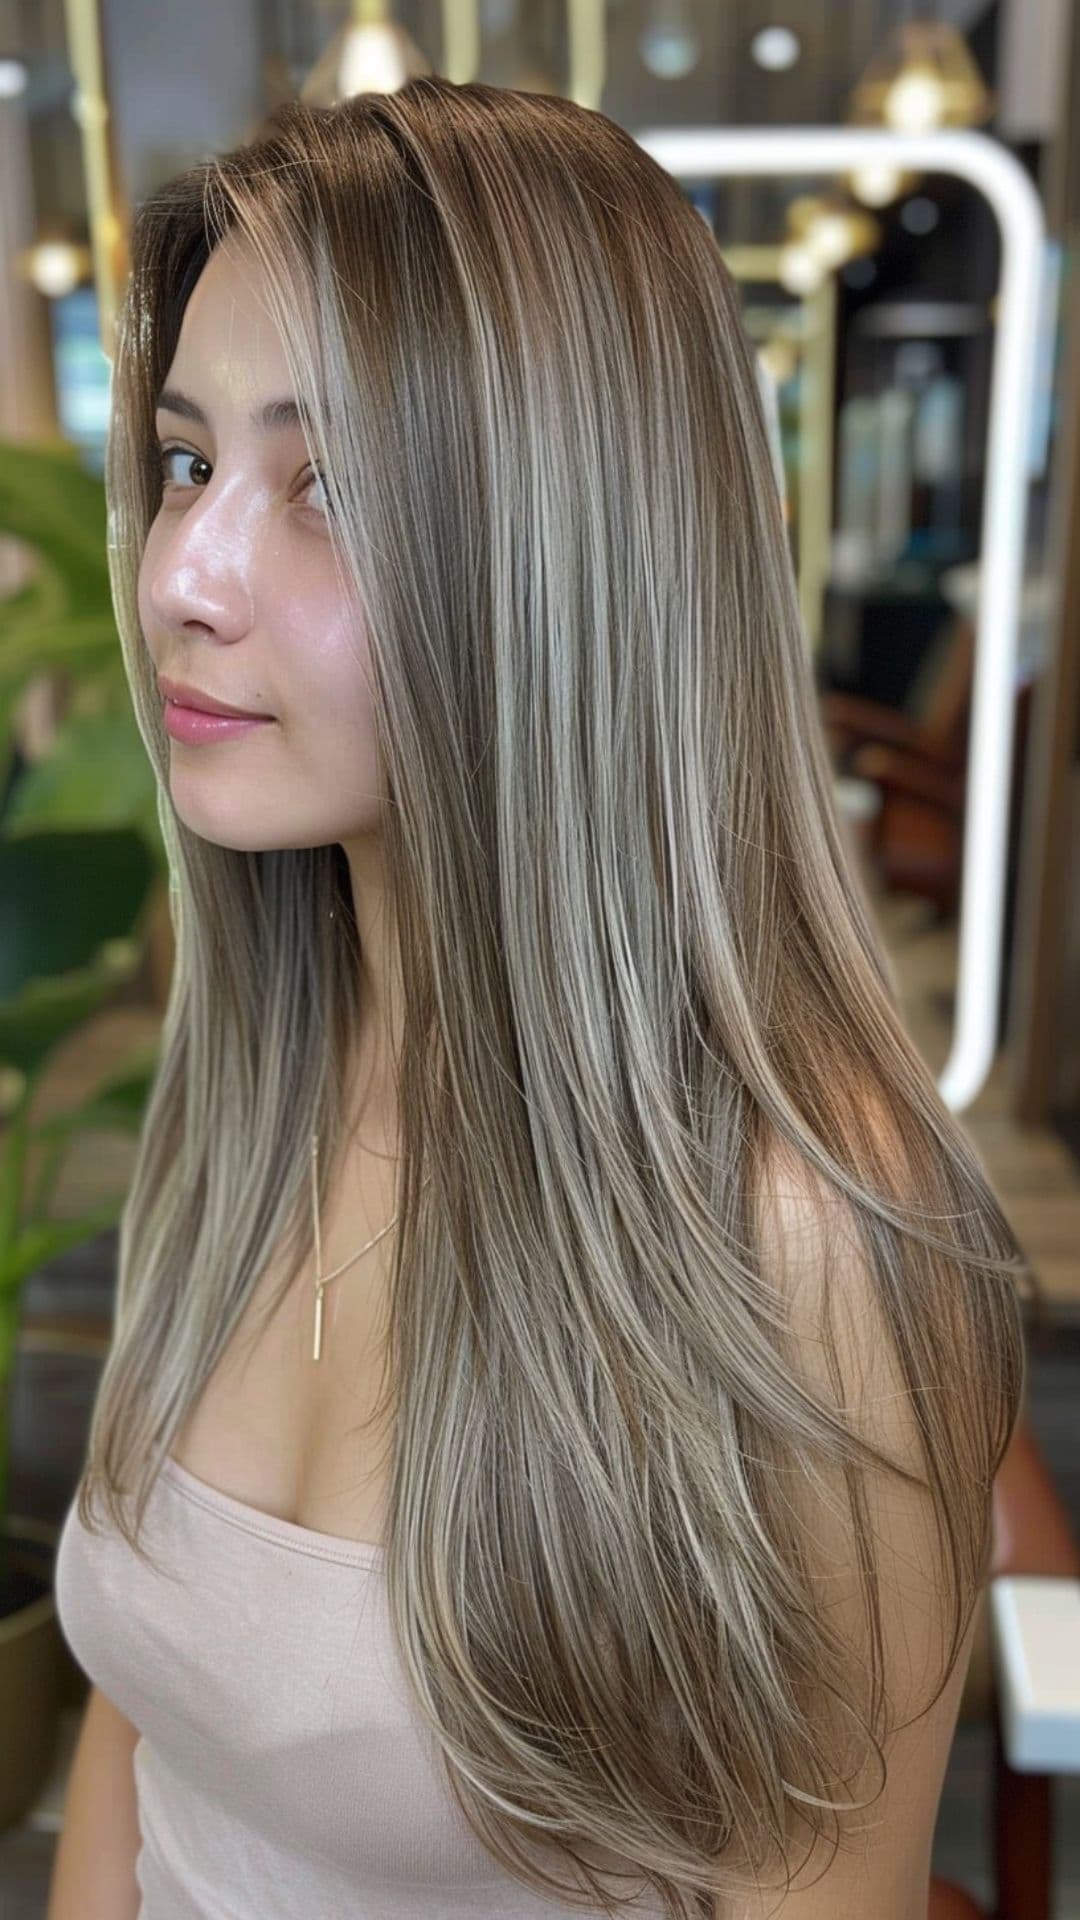 A woman modelling an ash gray balayage hair.